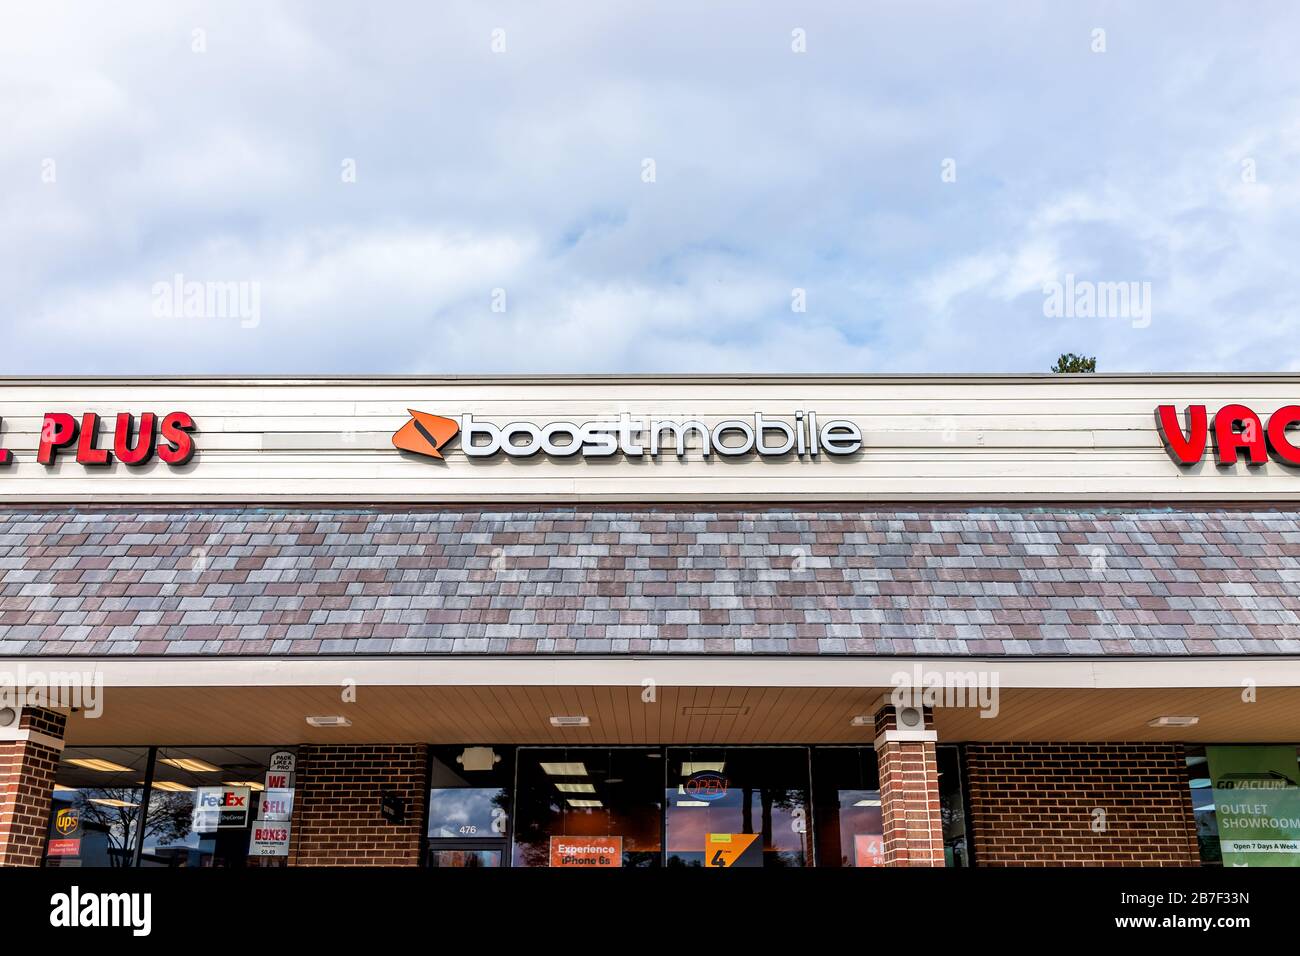 Herndon, Stati Uniti d'America - 12 novembre 2019: Esterno del negozio Boost Mobile sulla strada in Virginia Fairfax County con cartello e ingresso Foto Stock